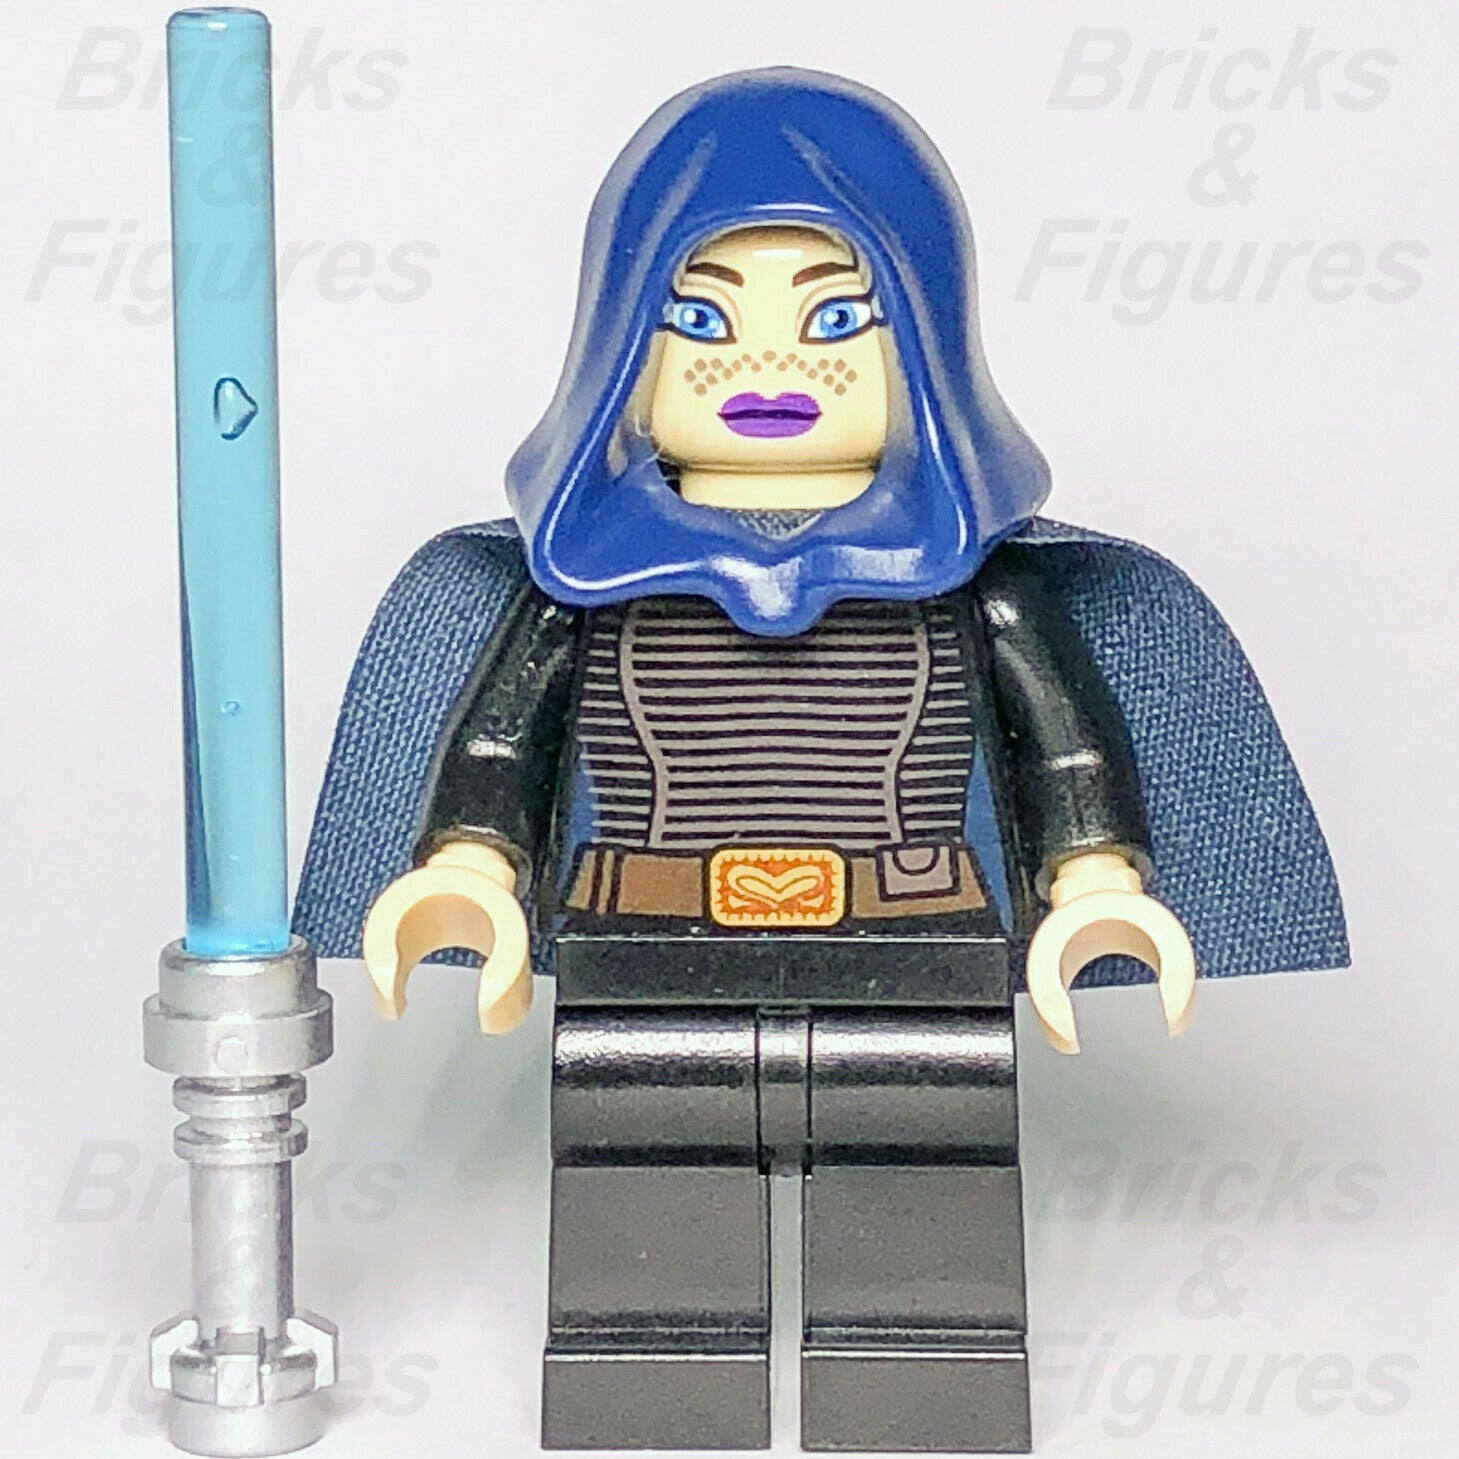 New Star Wars LEGO Barriss Offee Jedi Padawan Clone Wars Minifigure 9491 - Bricks & Figures